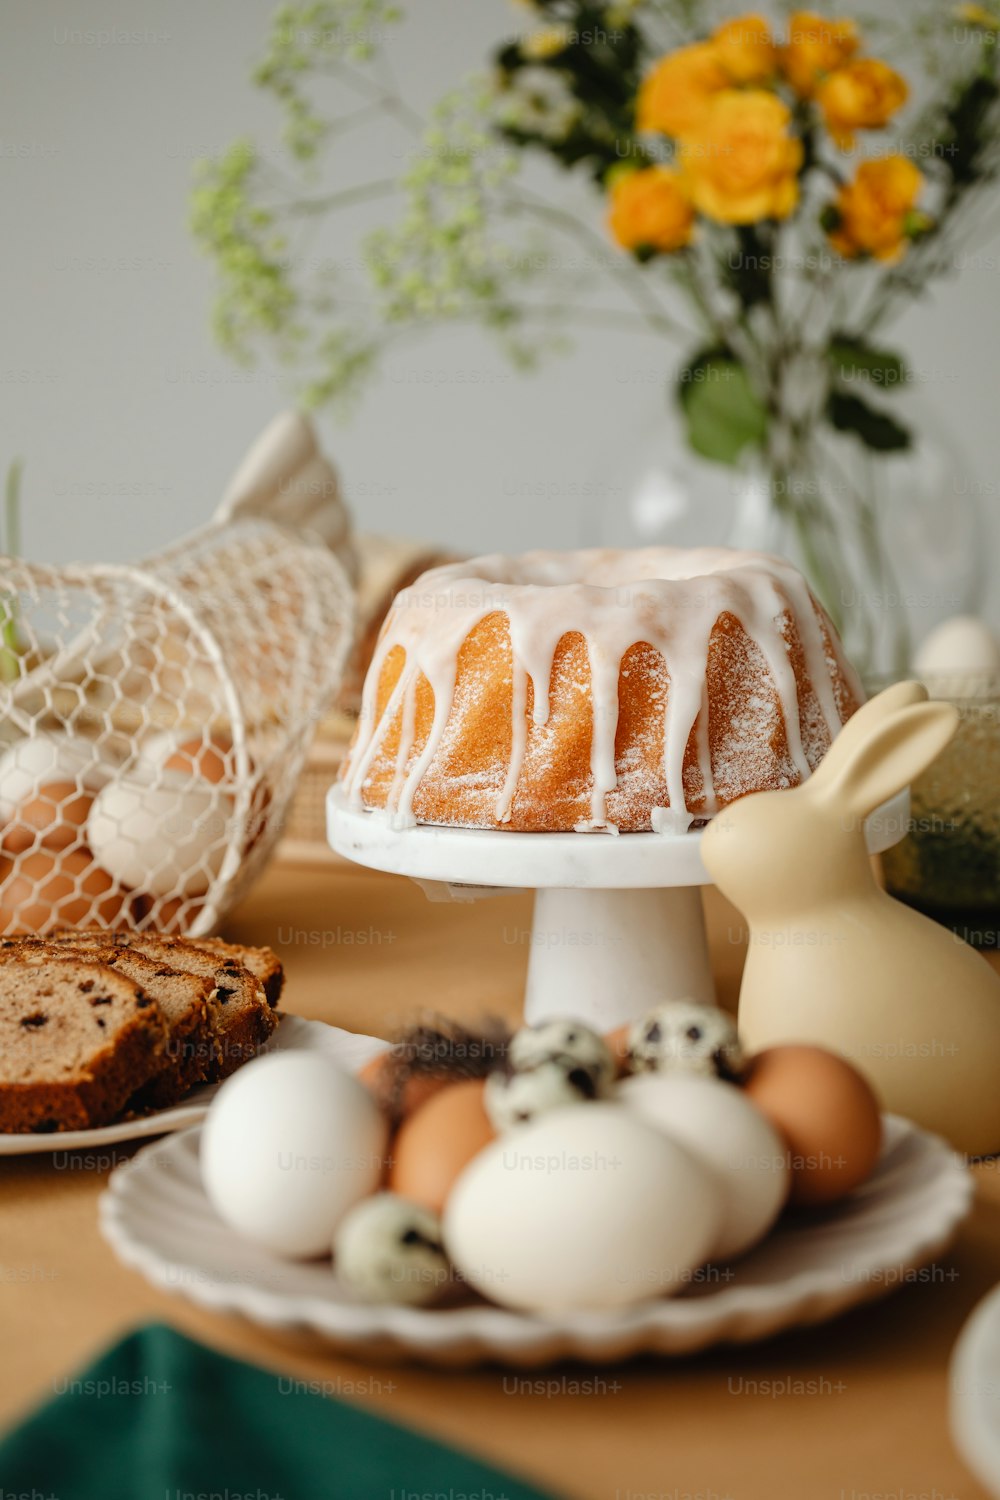 Un pastel bundt sentado encima de un plato blanco